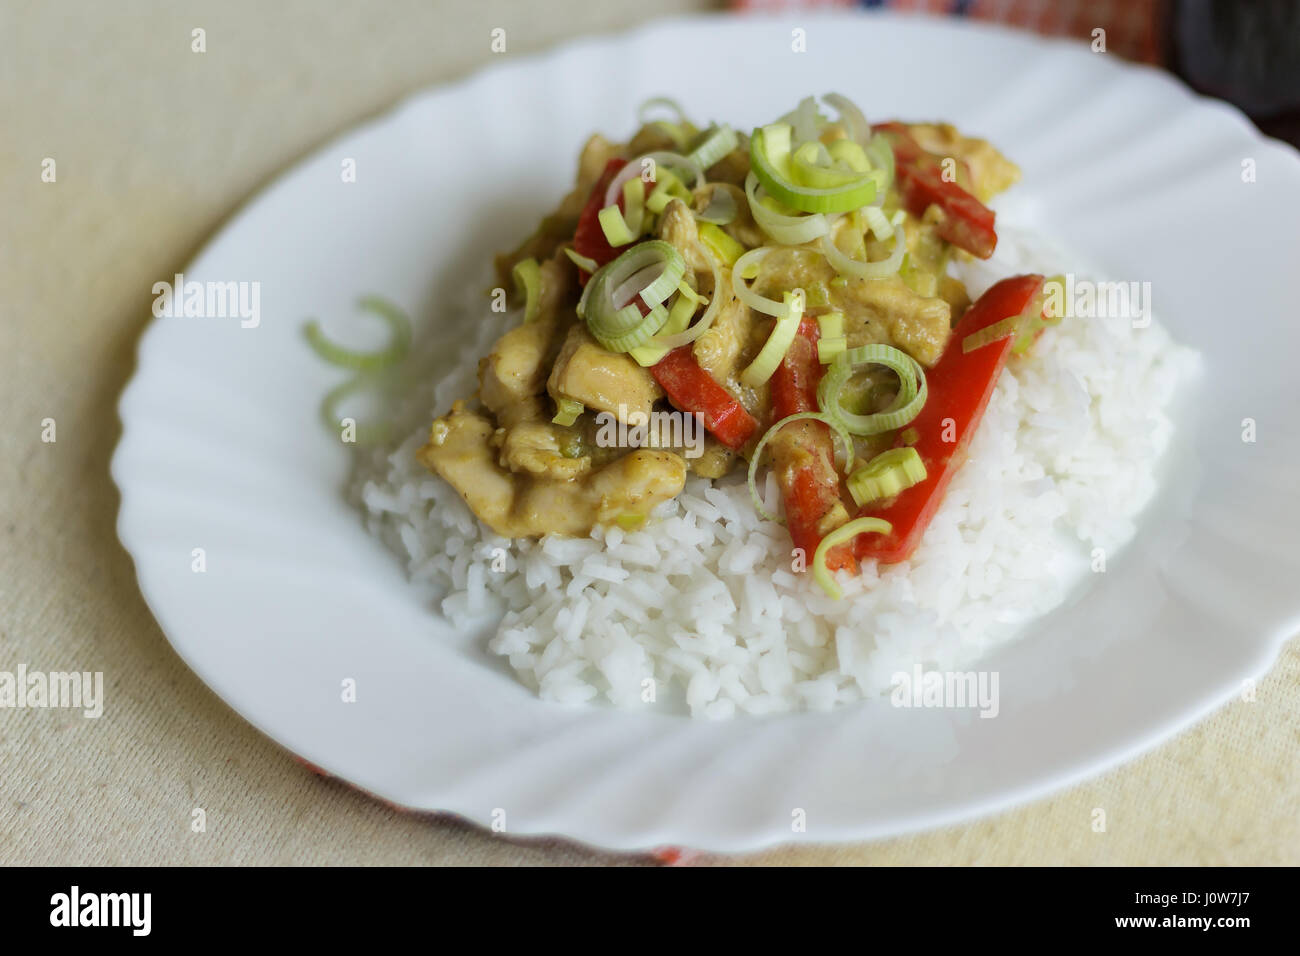 Vietnam - la viande de poulet rôti avec des légumes et du riz sur une plaque blanche Banque D'Images